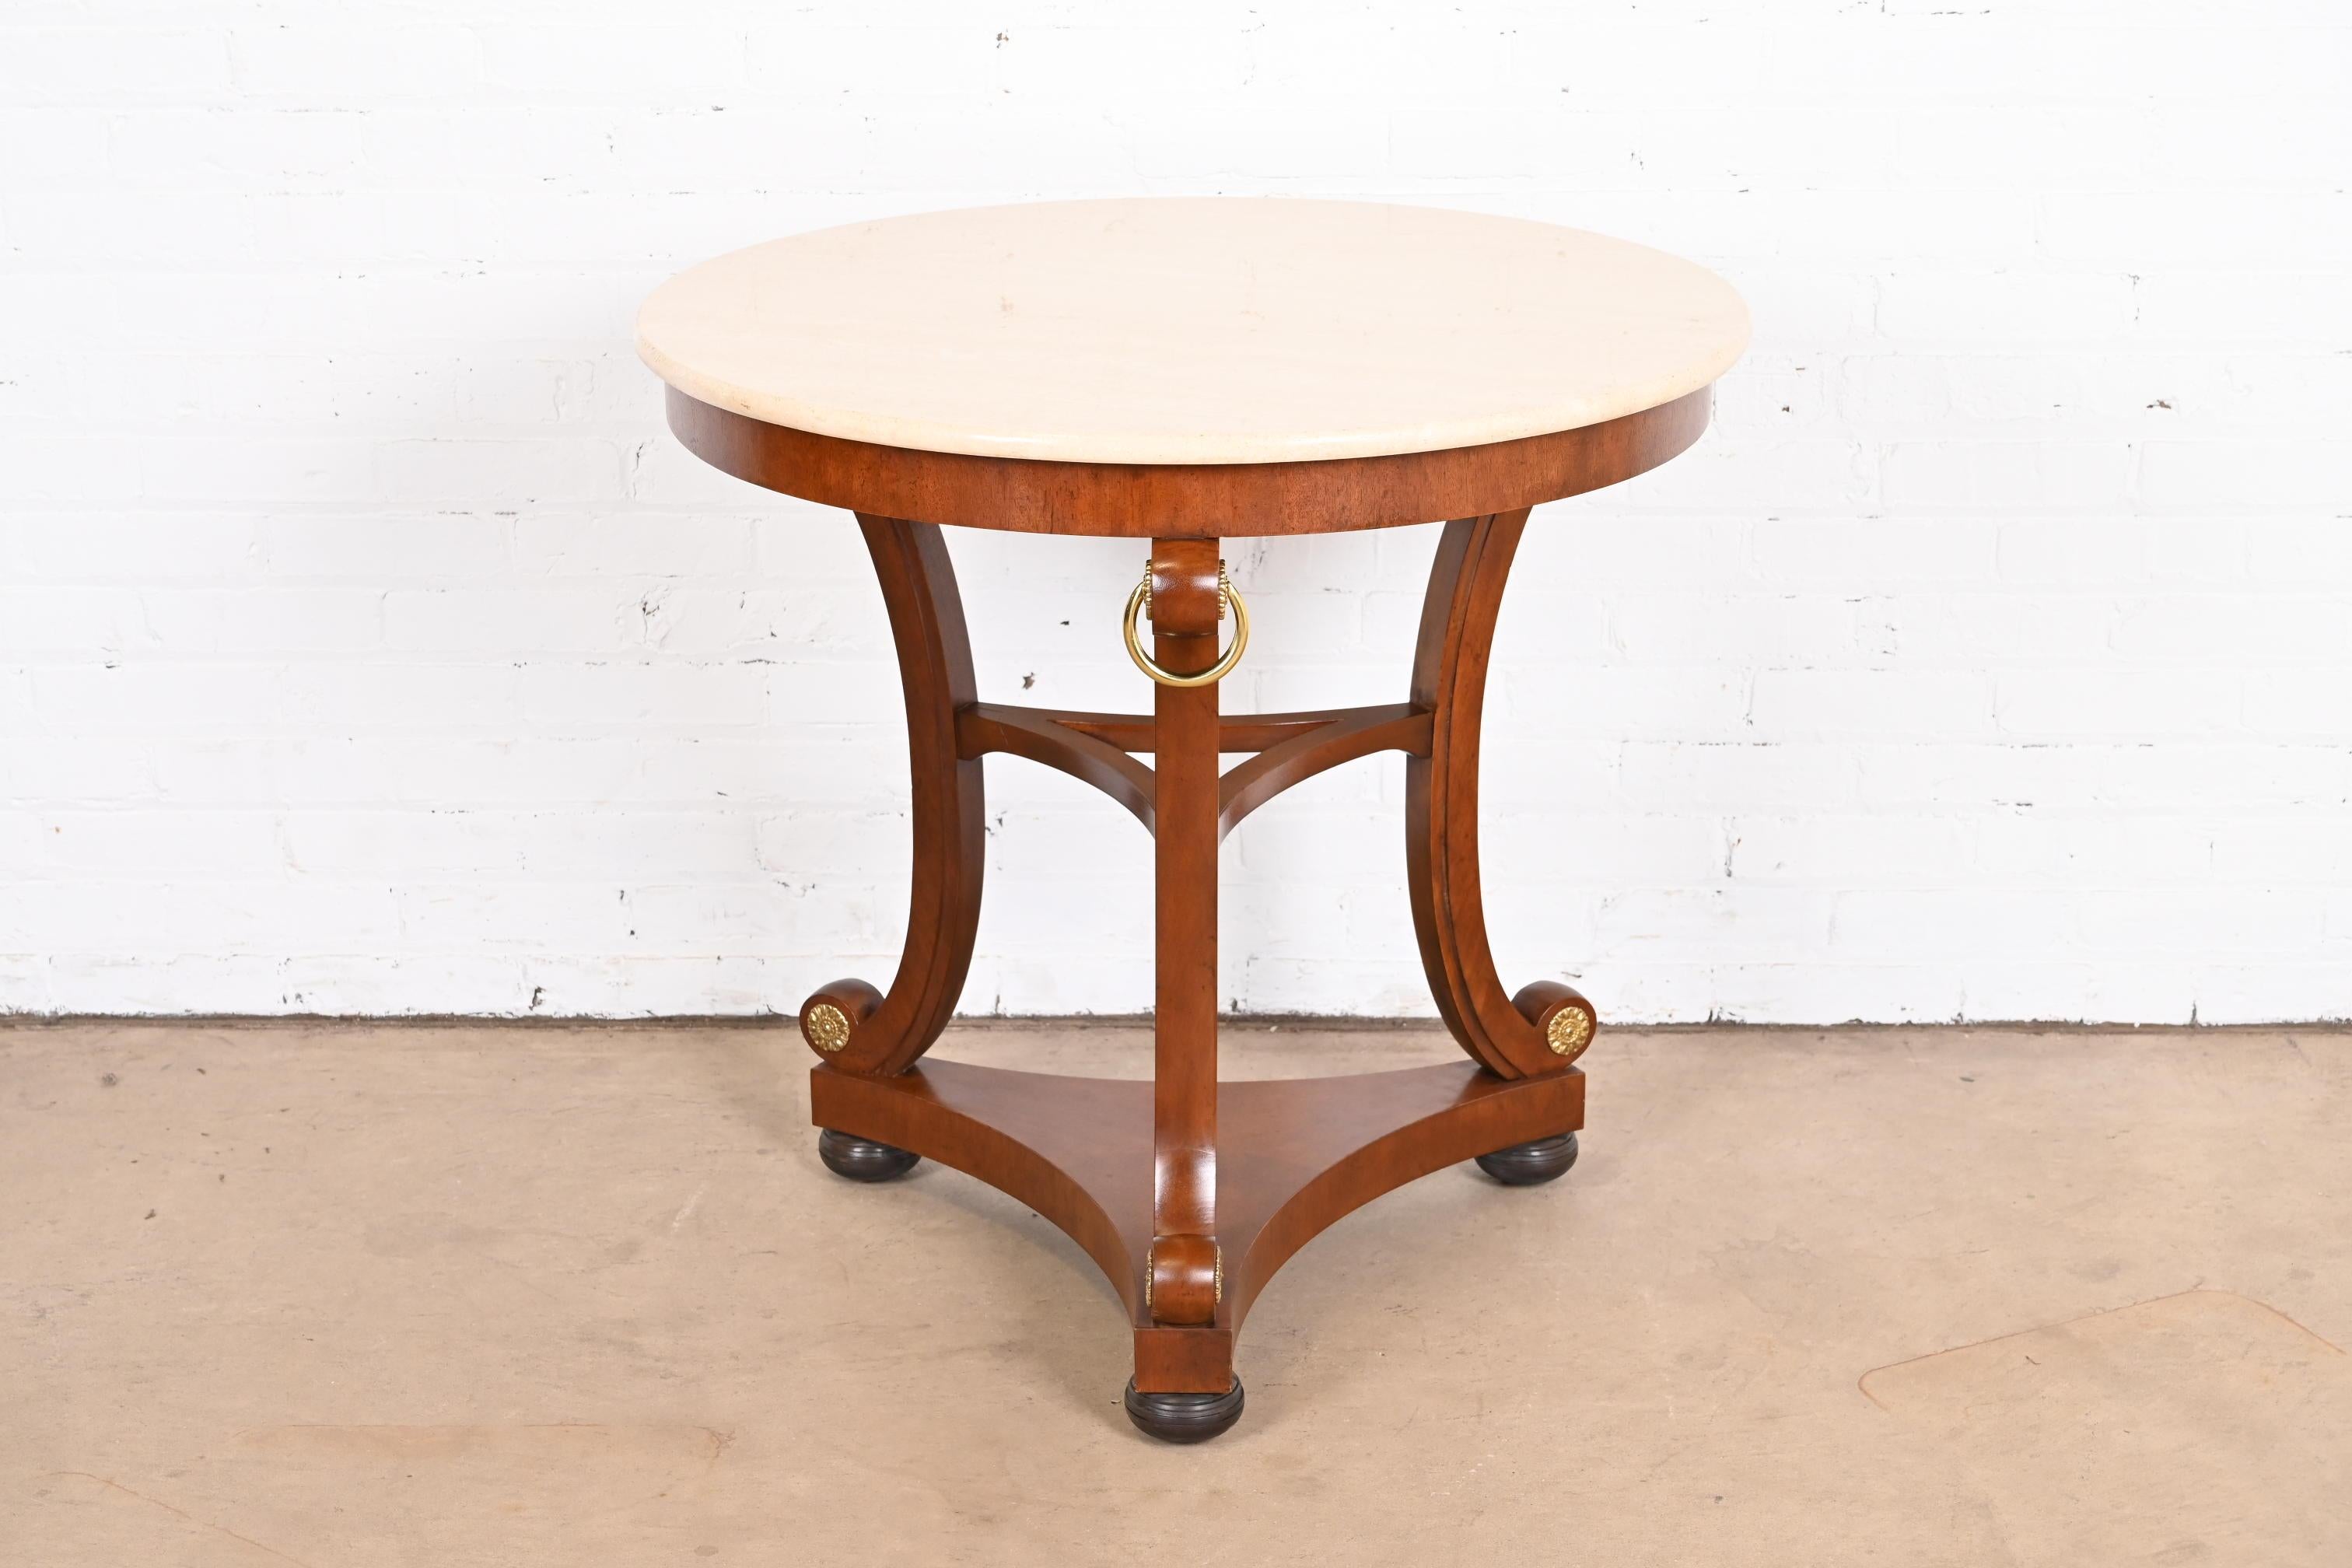 Une table à thé ou un centre de table exceptionnel de style Régence ou Empire.

Par Baker Furniture, collection 